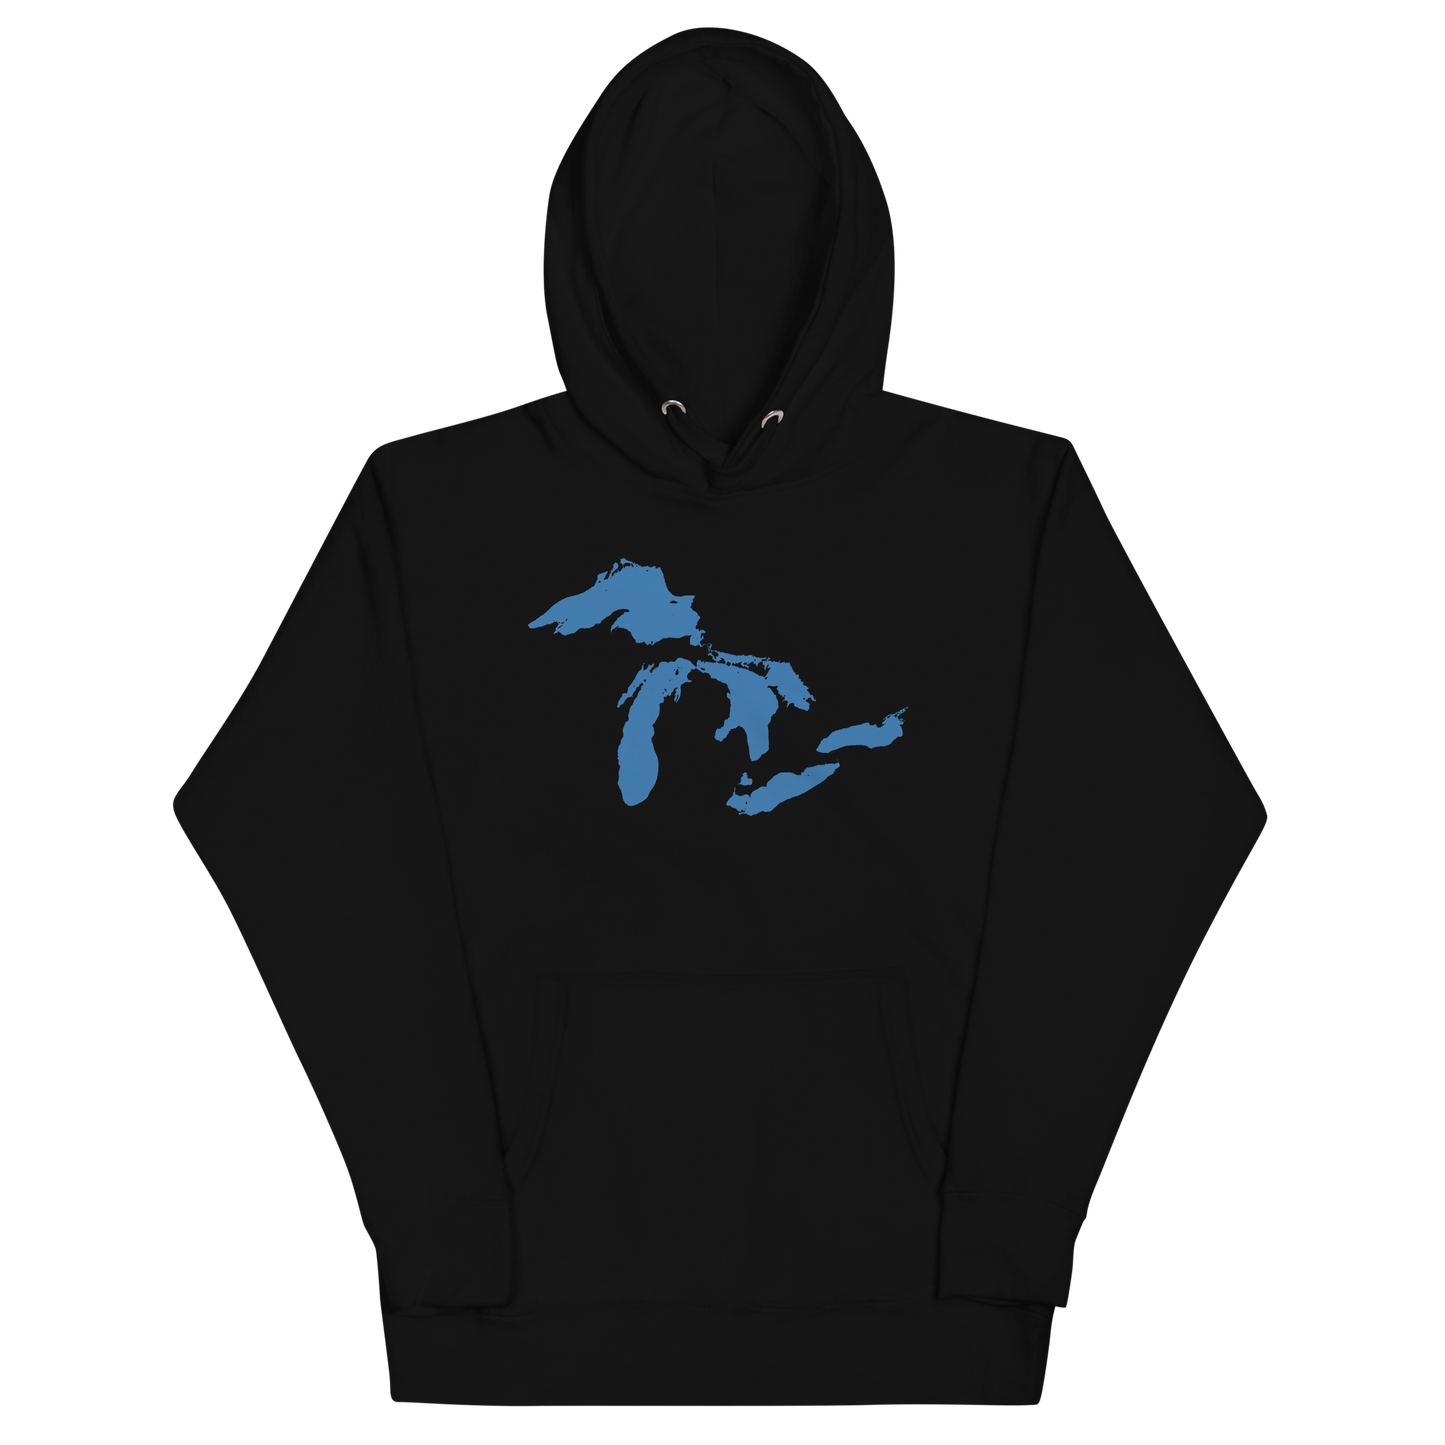 Great Lakes Hoodie (Superior Blue) | Unisex Premium